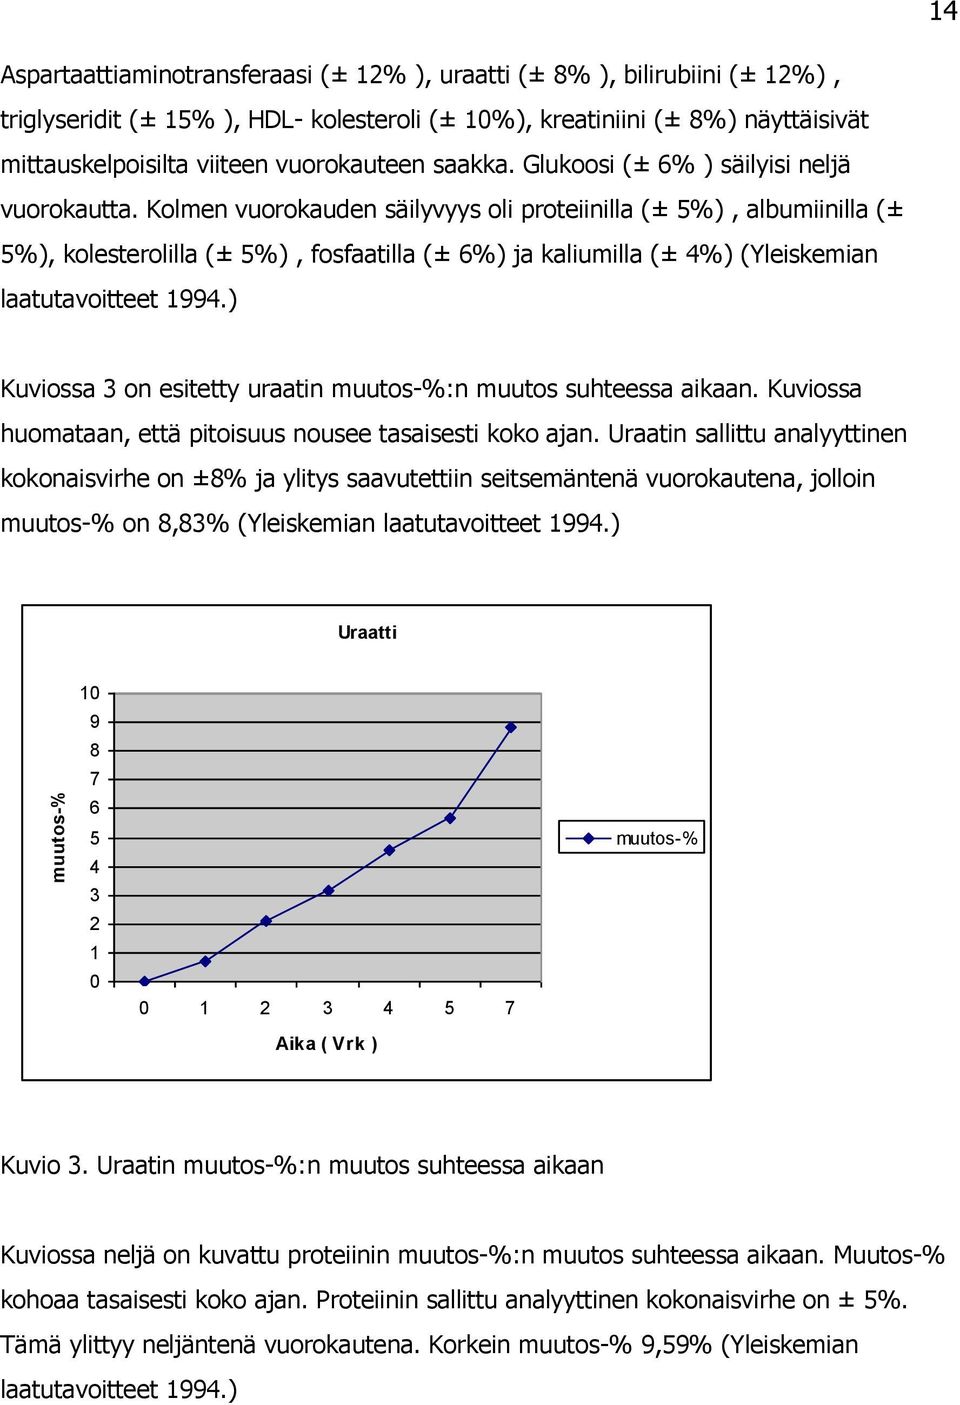 Kolmen vuorokauden säilyvyys oli proteiinilla (± 5%), albumiinilla (± 5%), kolesterolilla (± 5%), fosfaatilla (± 6%) ja kaliumilla (± 4%) (Yleiskemian laatutavoitteet 1994.